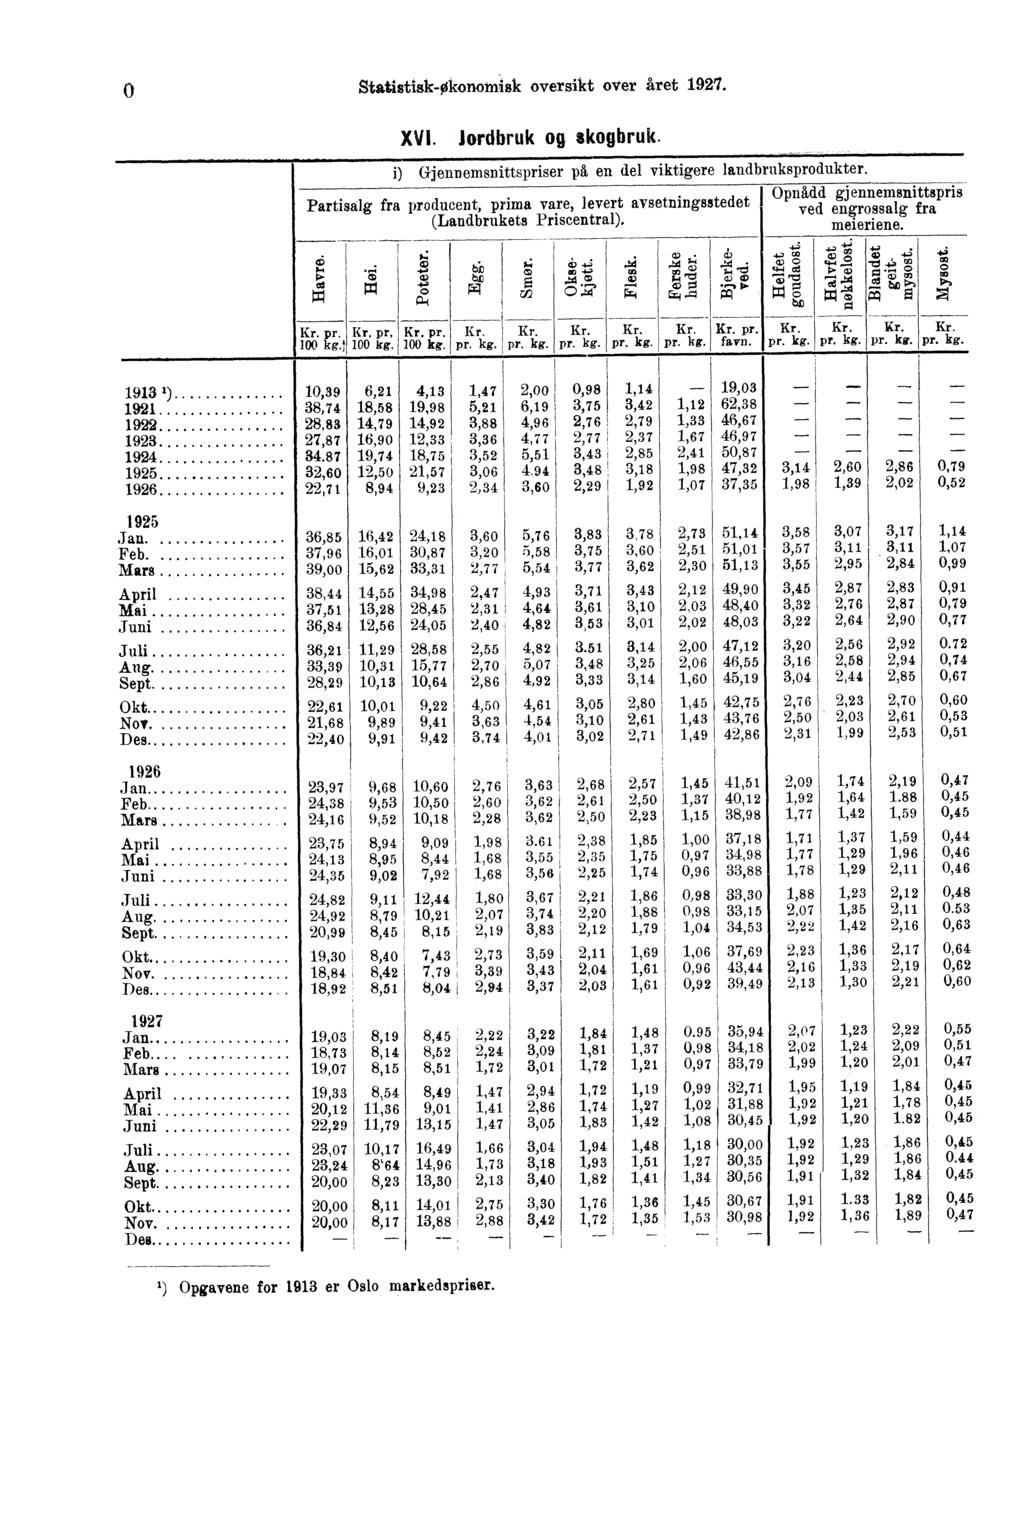 StatistiskOkonomisk oversikt over året. XVI. Jordbruk og skogbruk. i) (*jennemsnittspriser på en del viktigere landbruksprodukter.